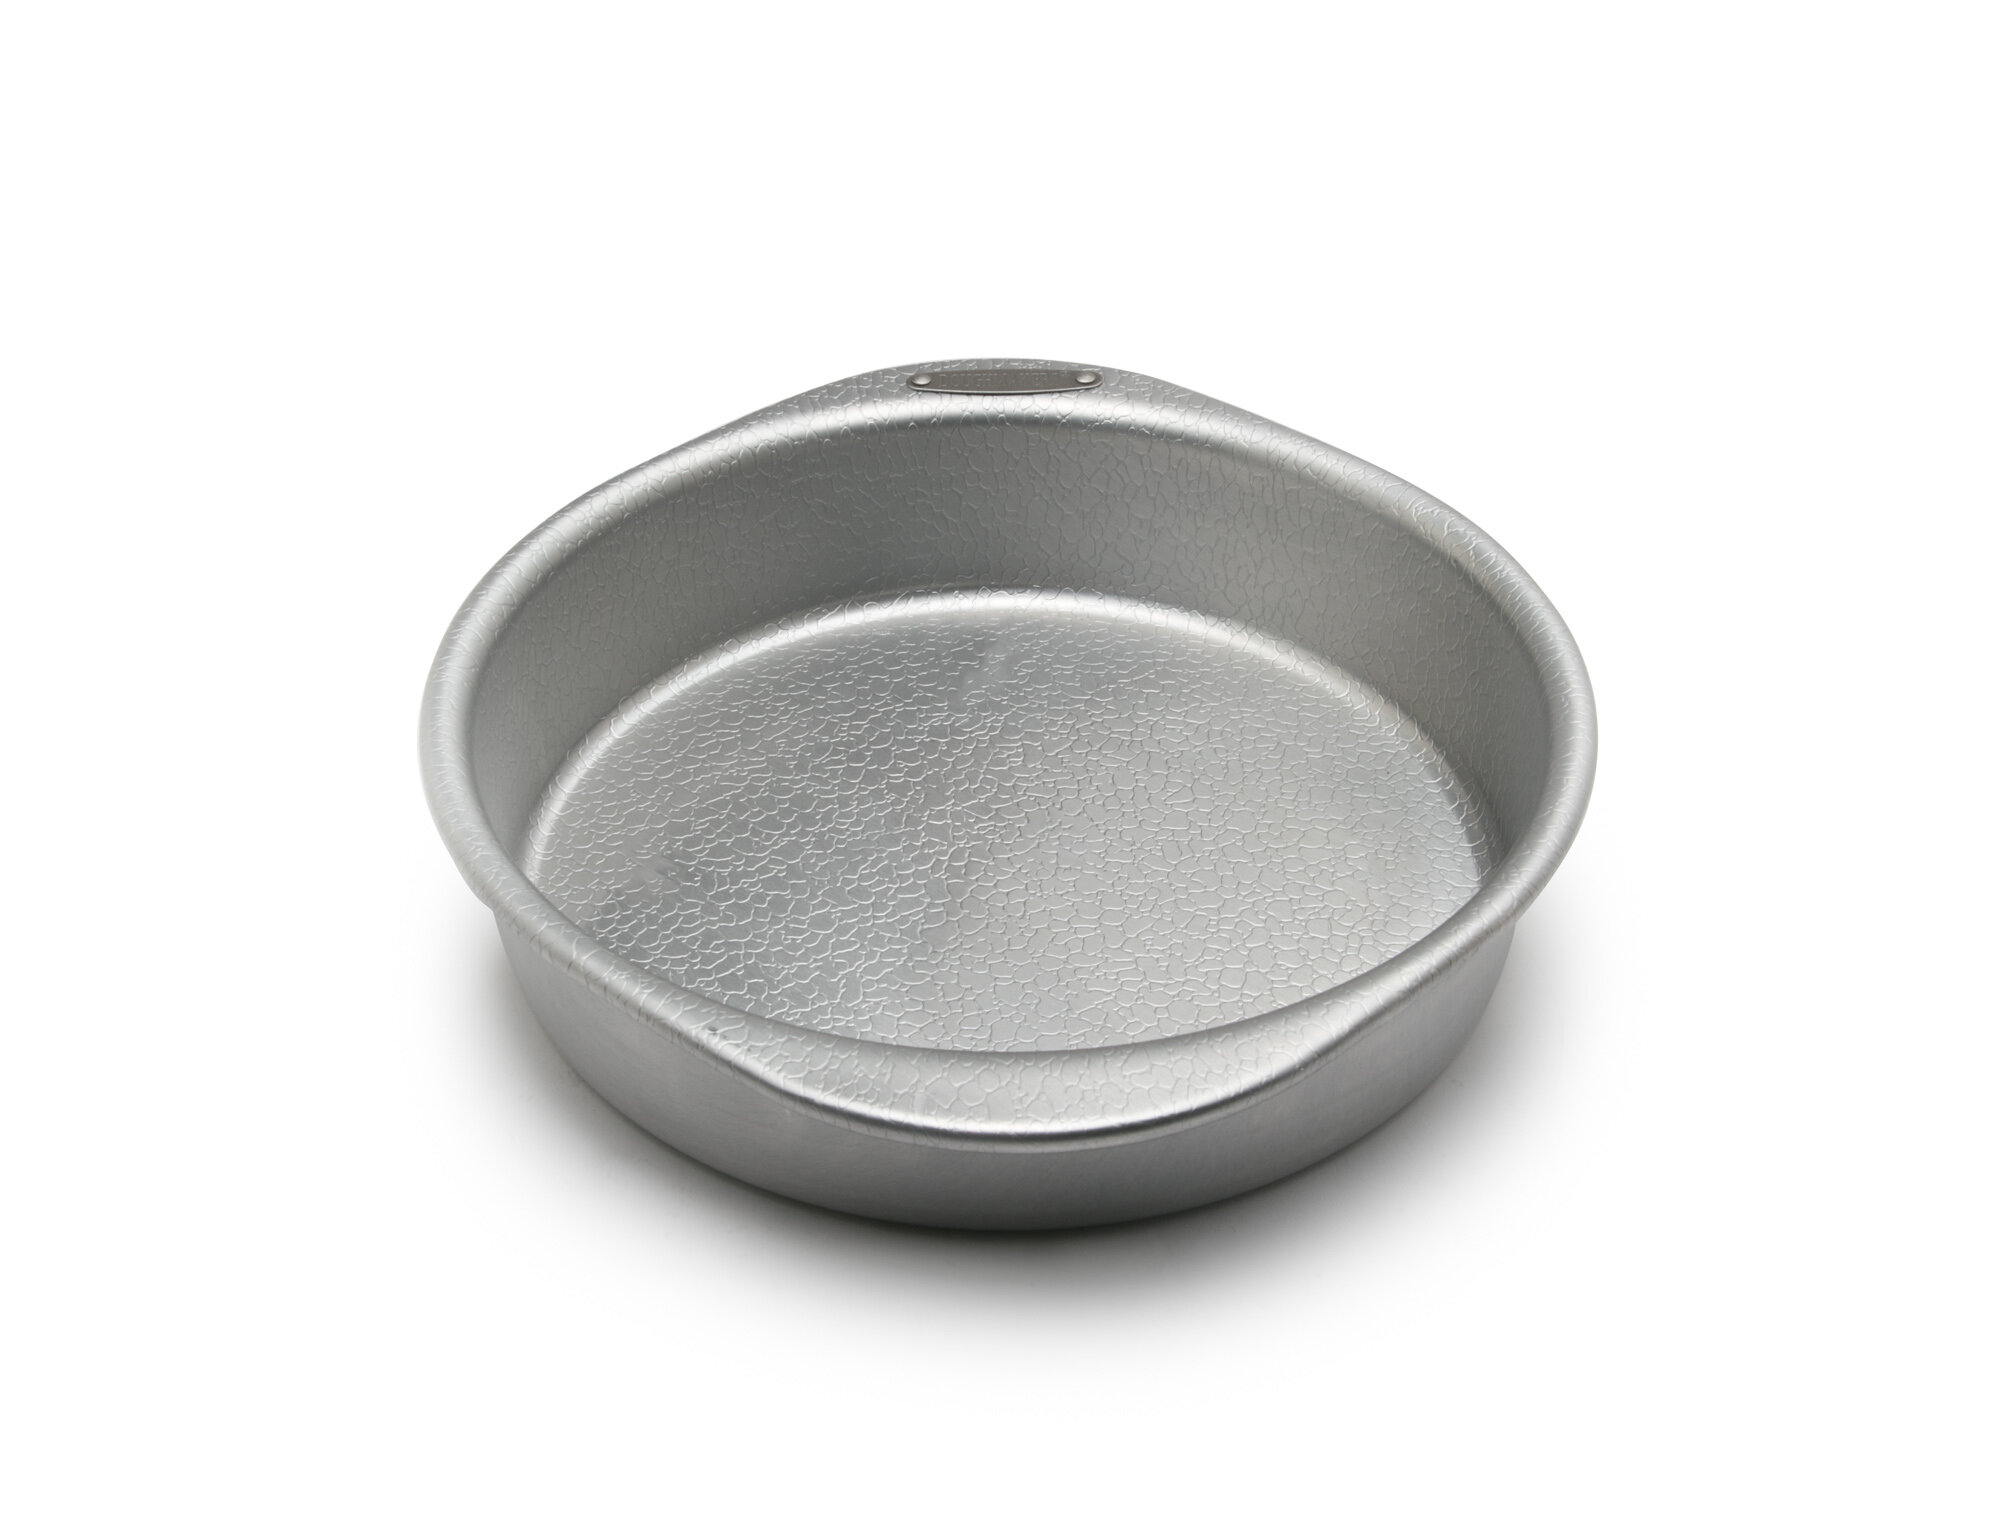 Fox Run Craftsmen Stainless Steel Baking Pan, Grey